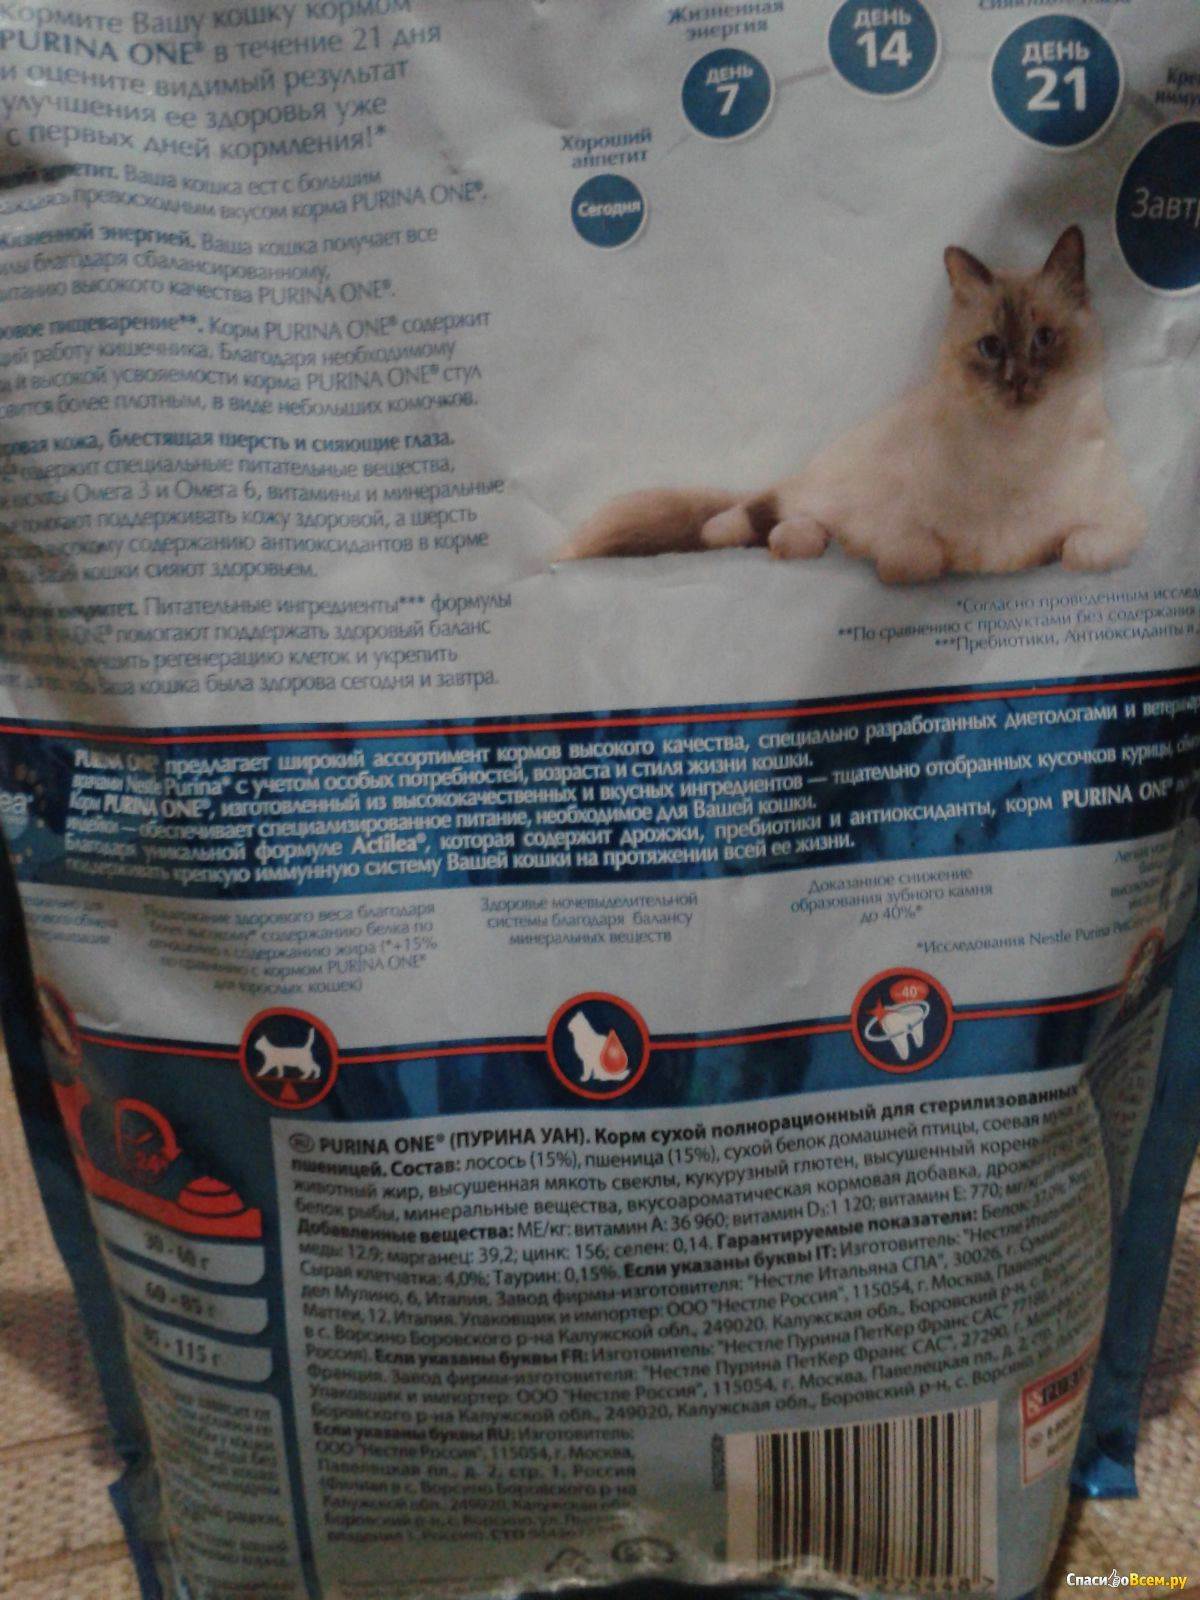 Подробно о сухих и жидких кормах для взрослых кошек и котят от purina one